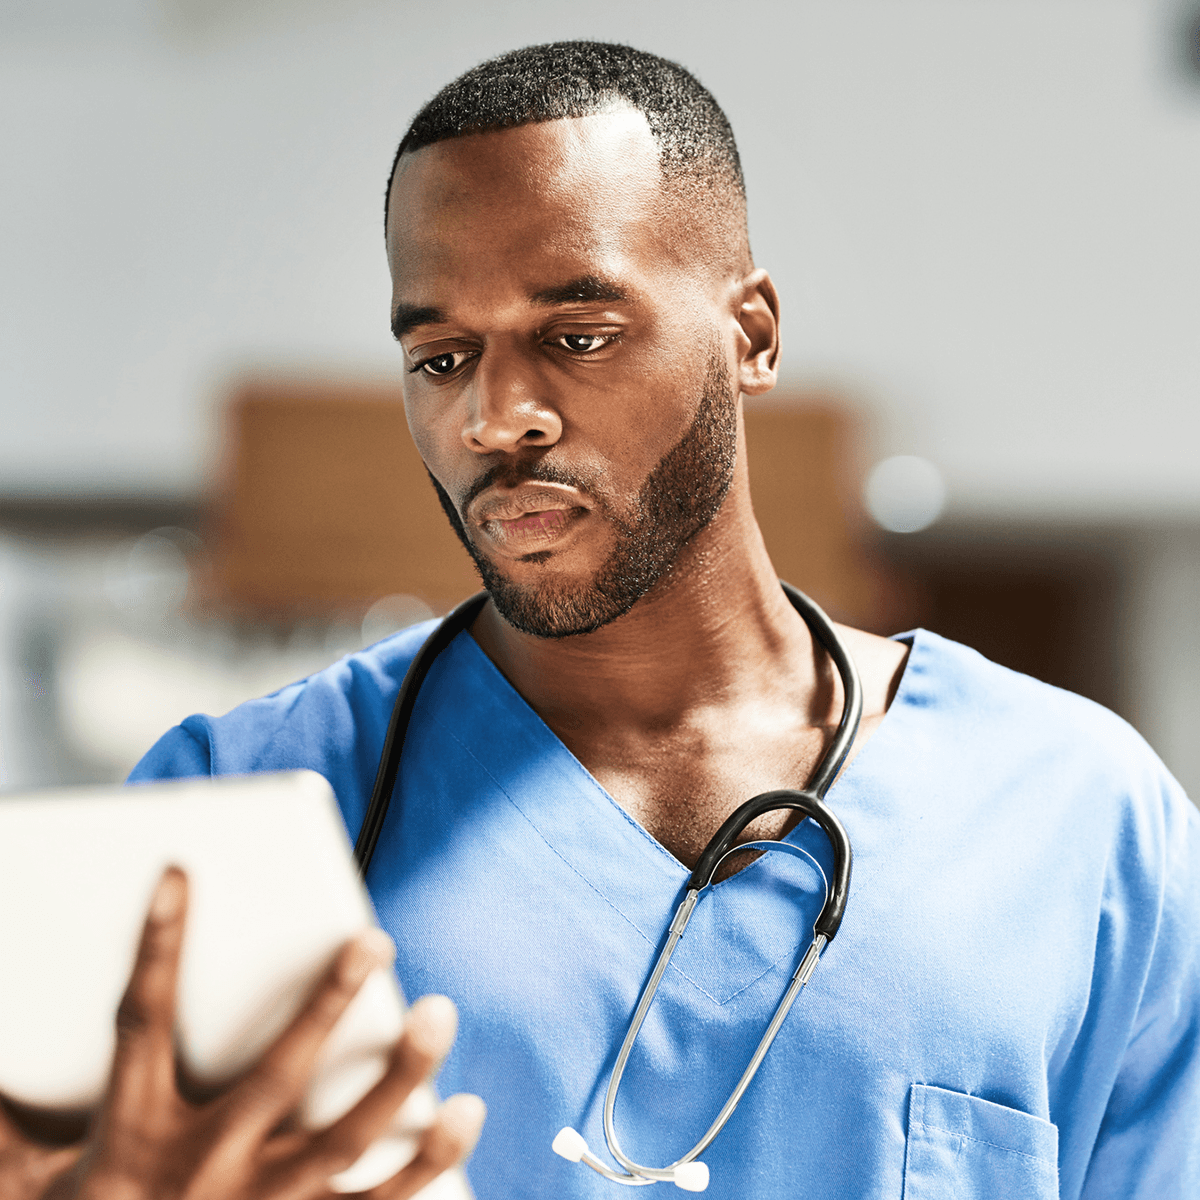 Man in scrubs looking at tablet